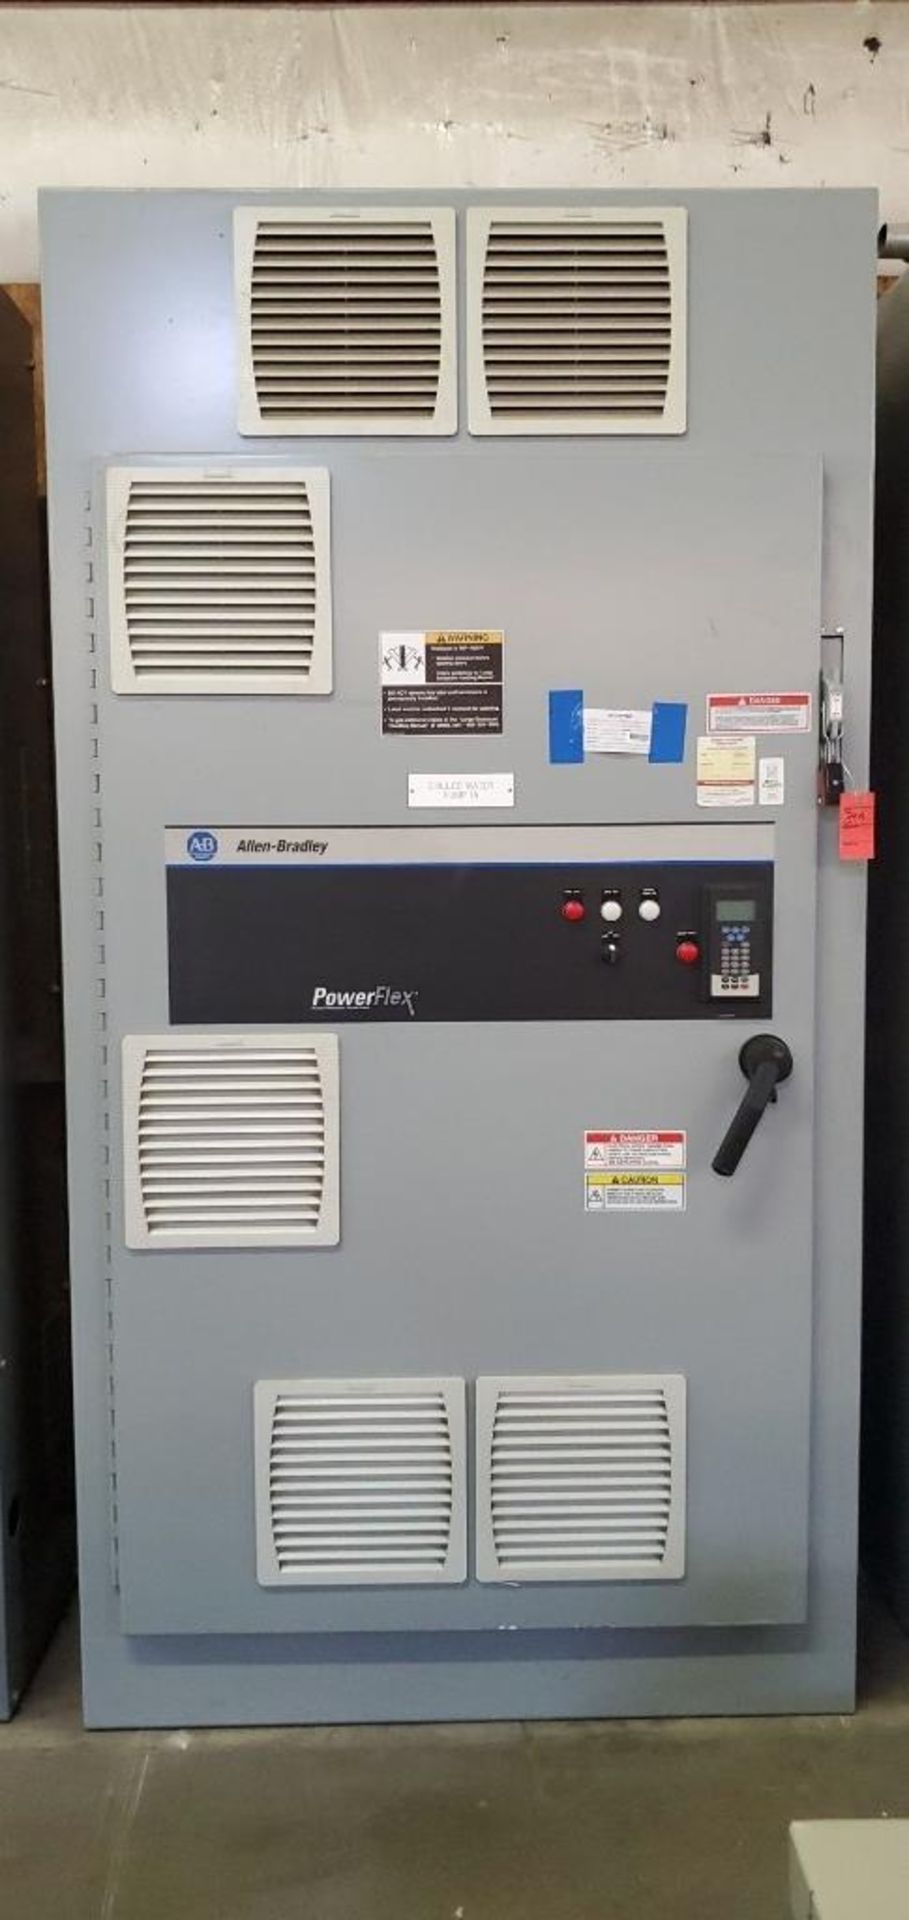 Allen-Bradley Power Flex Control Cabinet